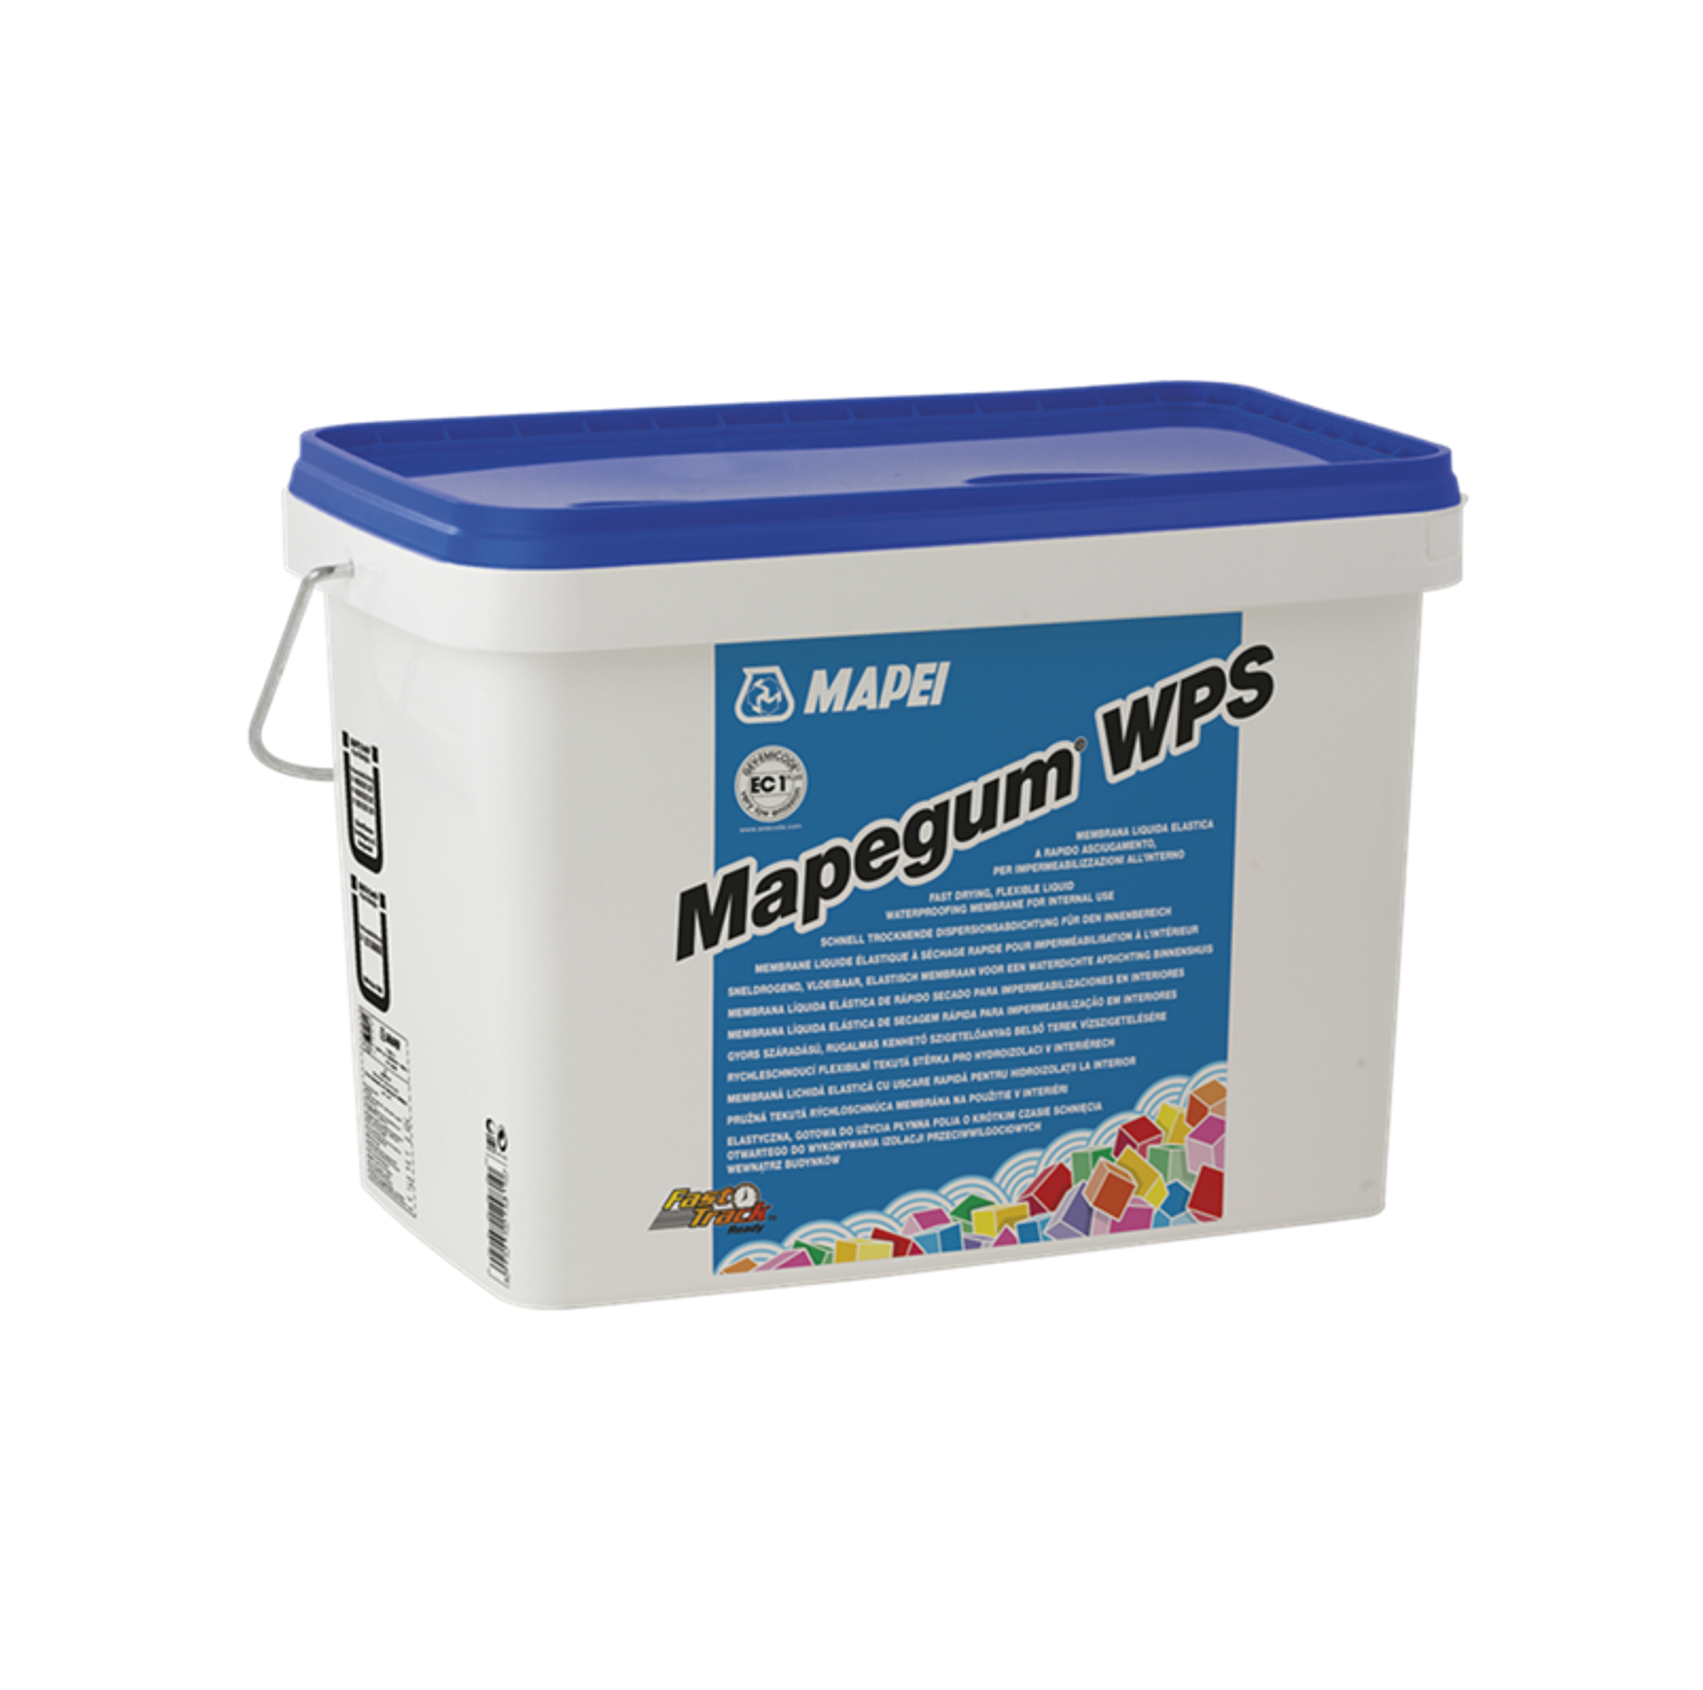 Mapei Mapegum Wps 25kg Waterproofing En 5008 F2l6 O6 